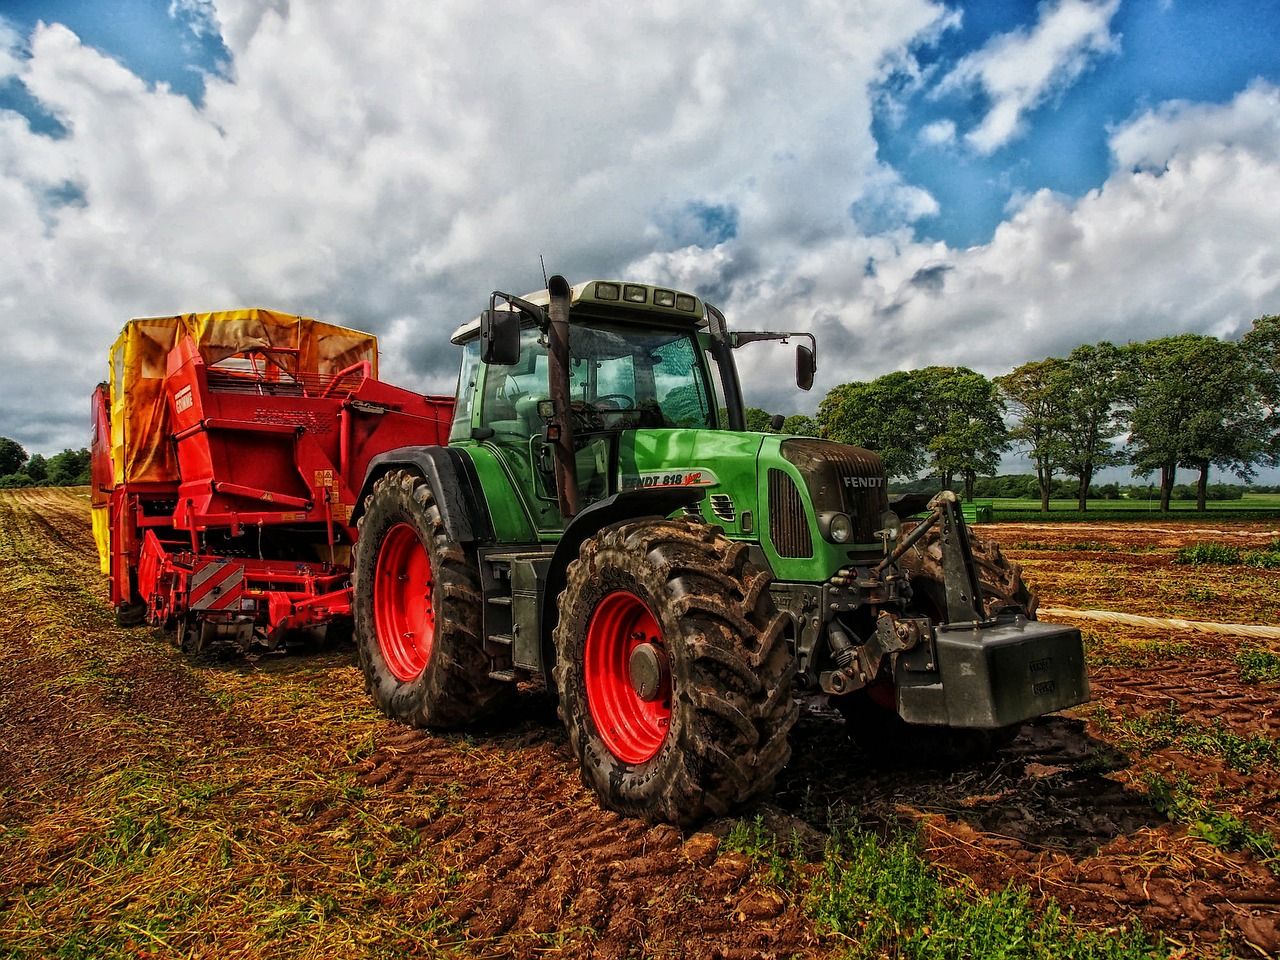 Produkty i akcesoria potrzebne w pracy każdego rolnika